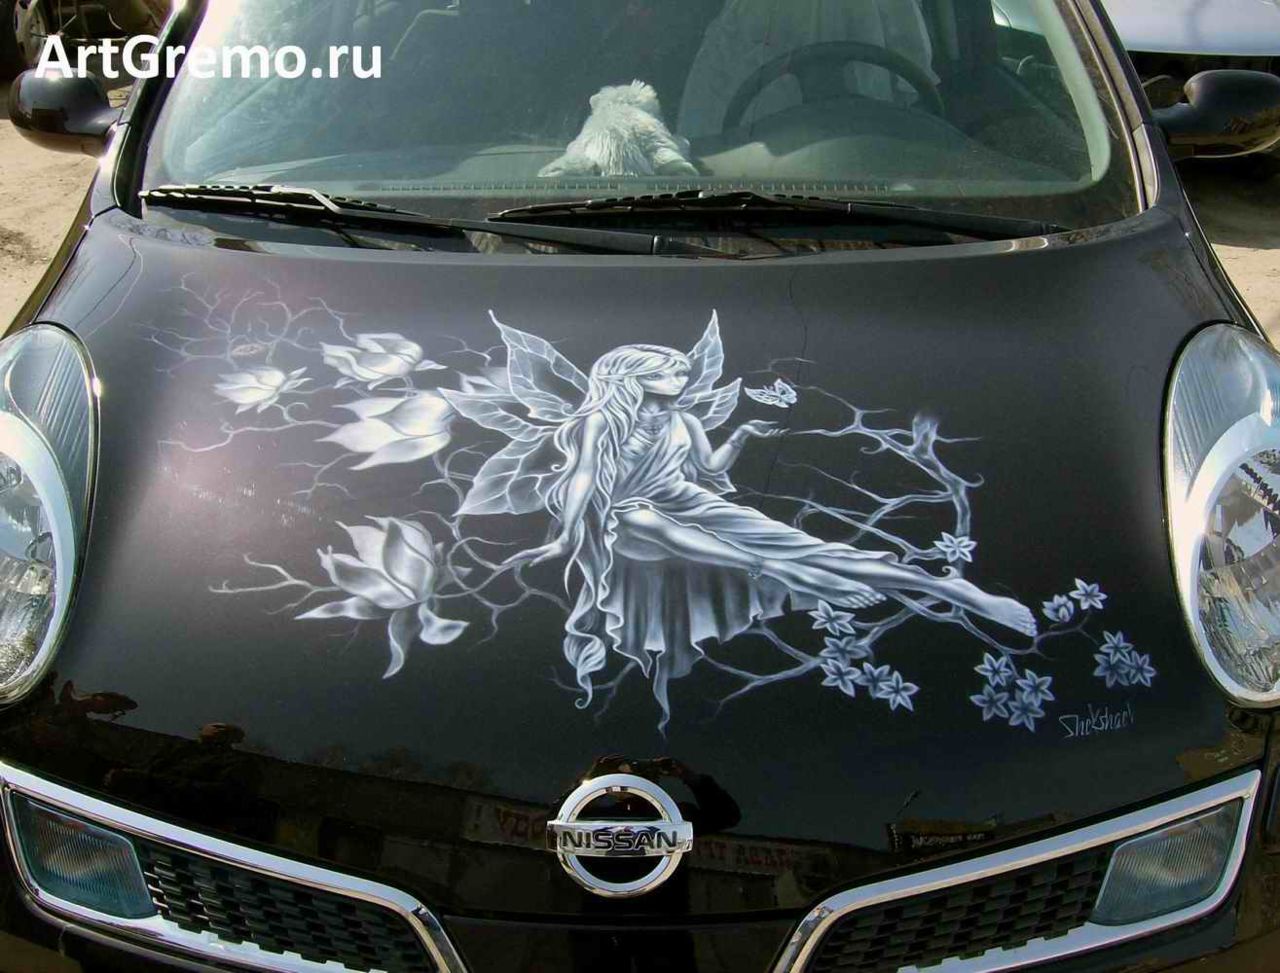 Аэрография на авто в Нижнем Новгороде